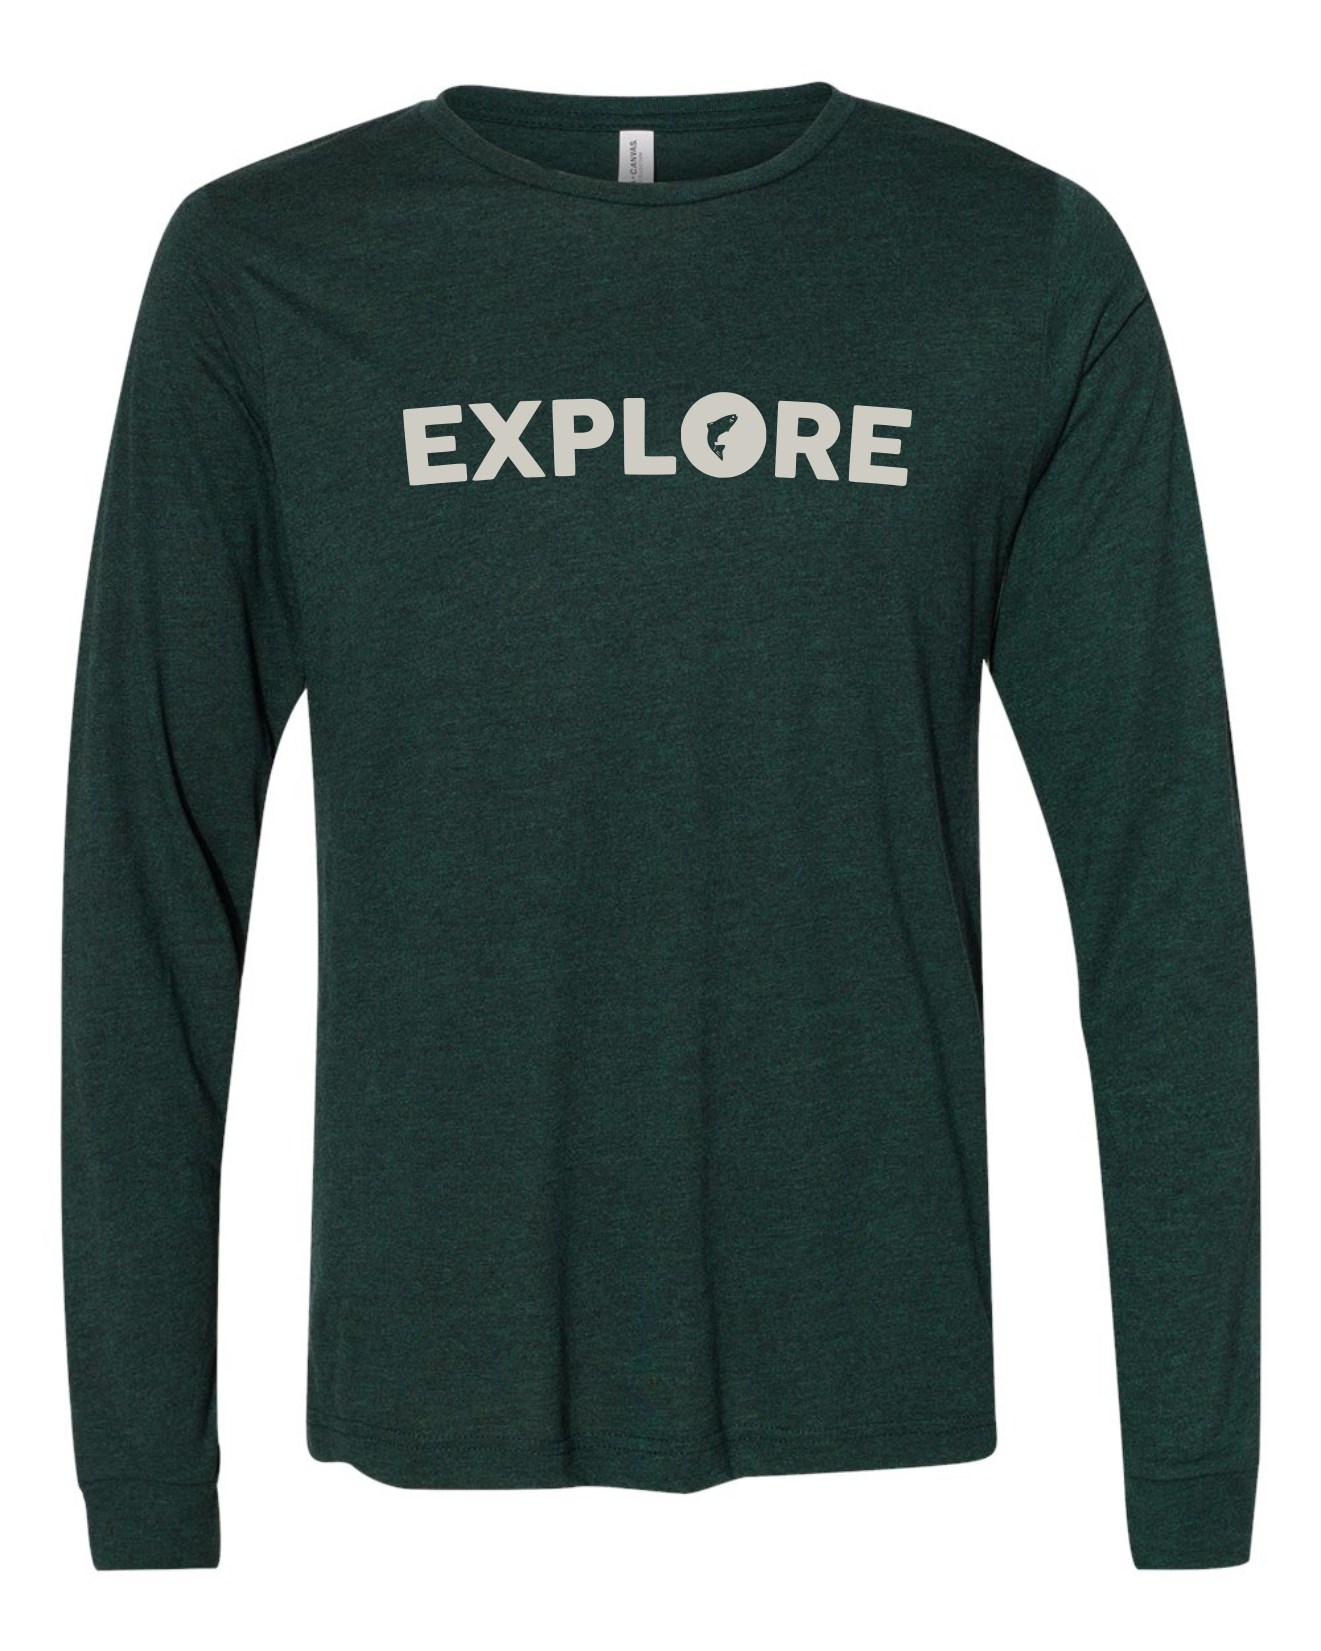 Explore LS T-Shirt - Emerald